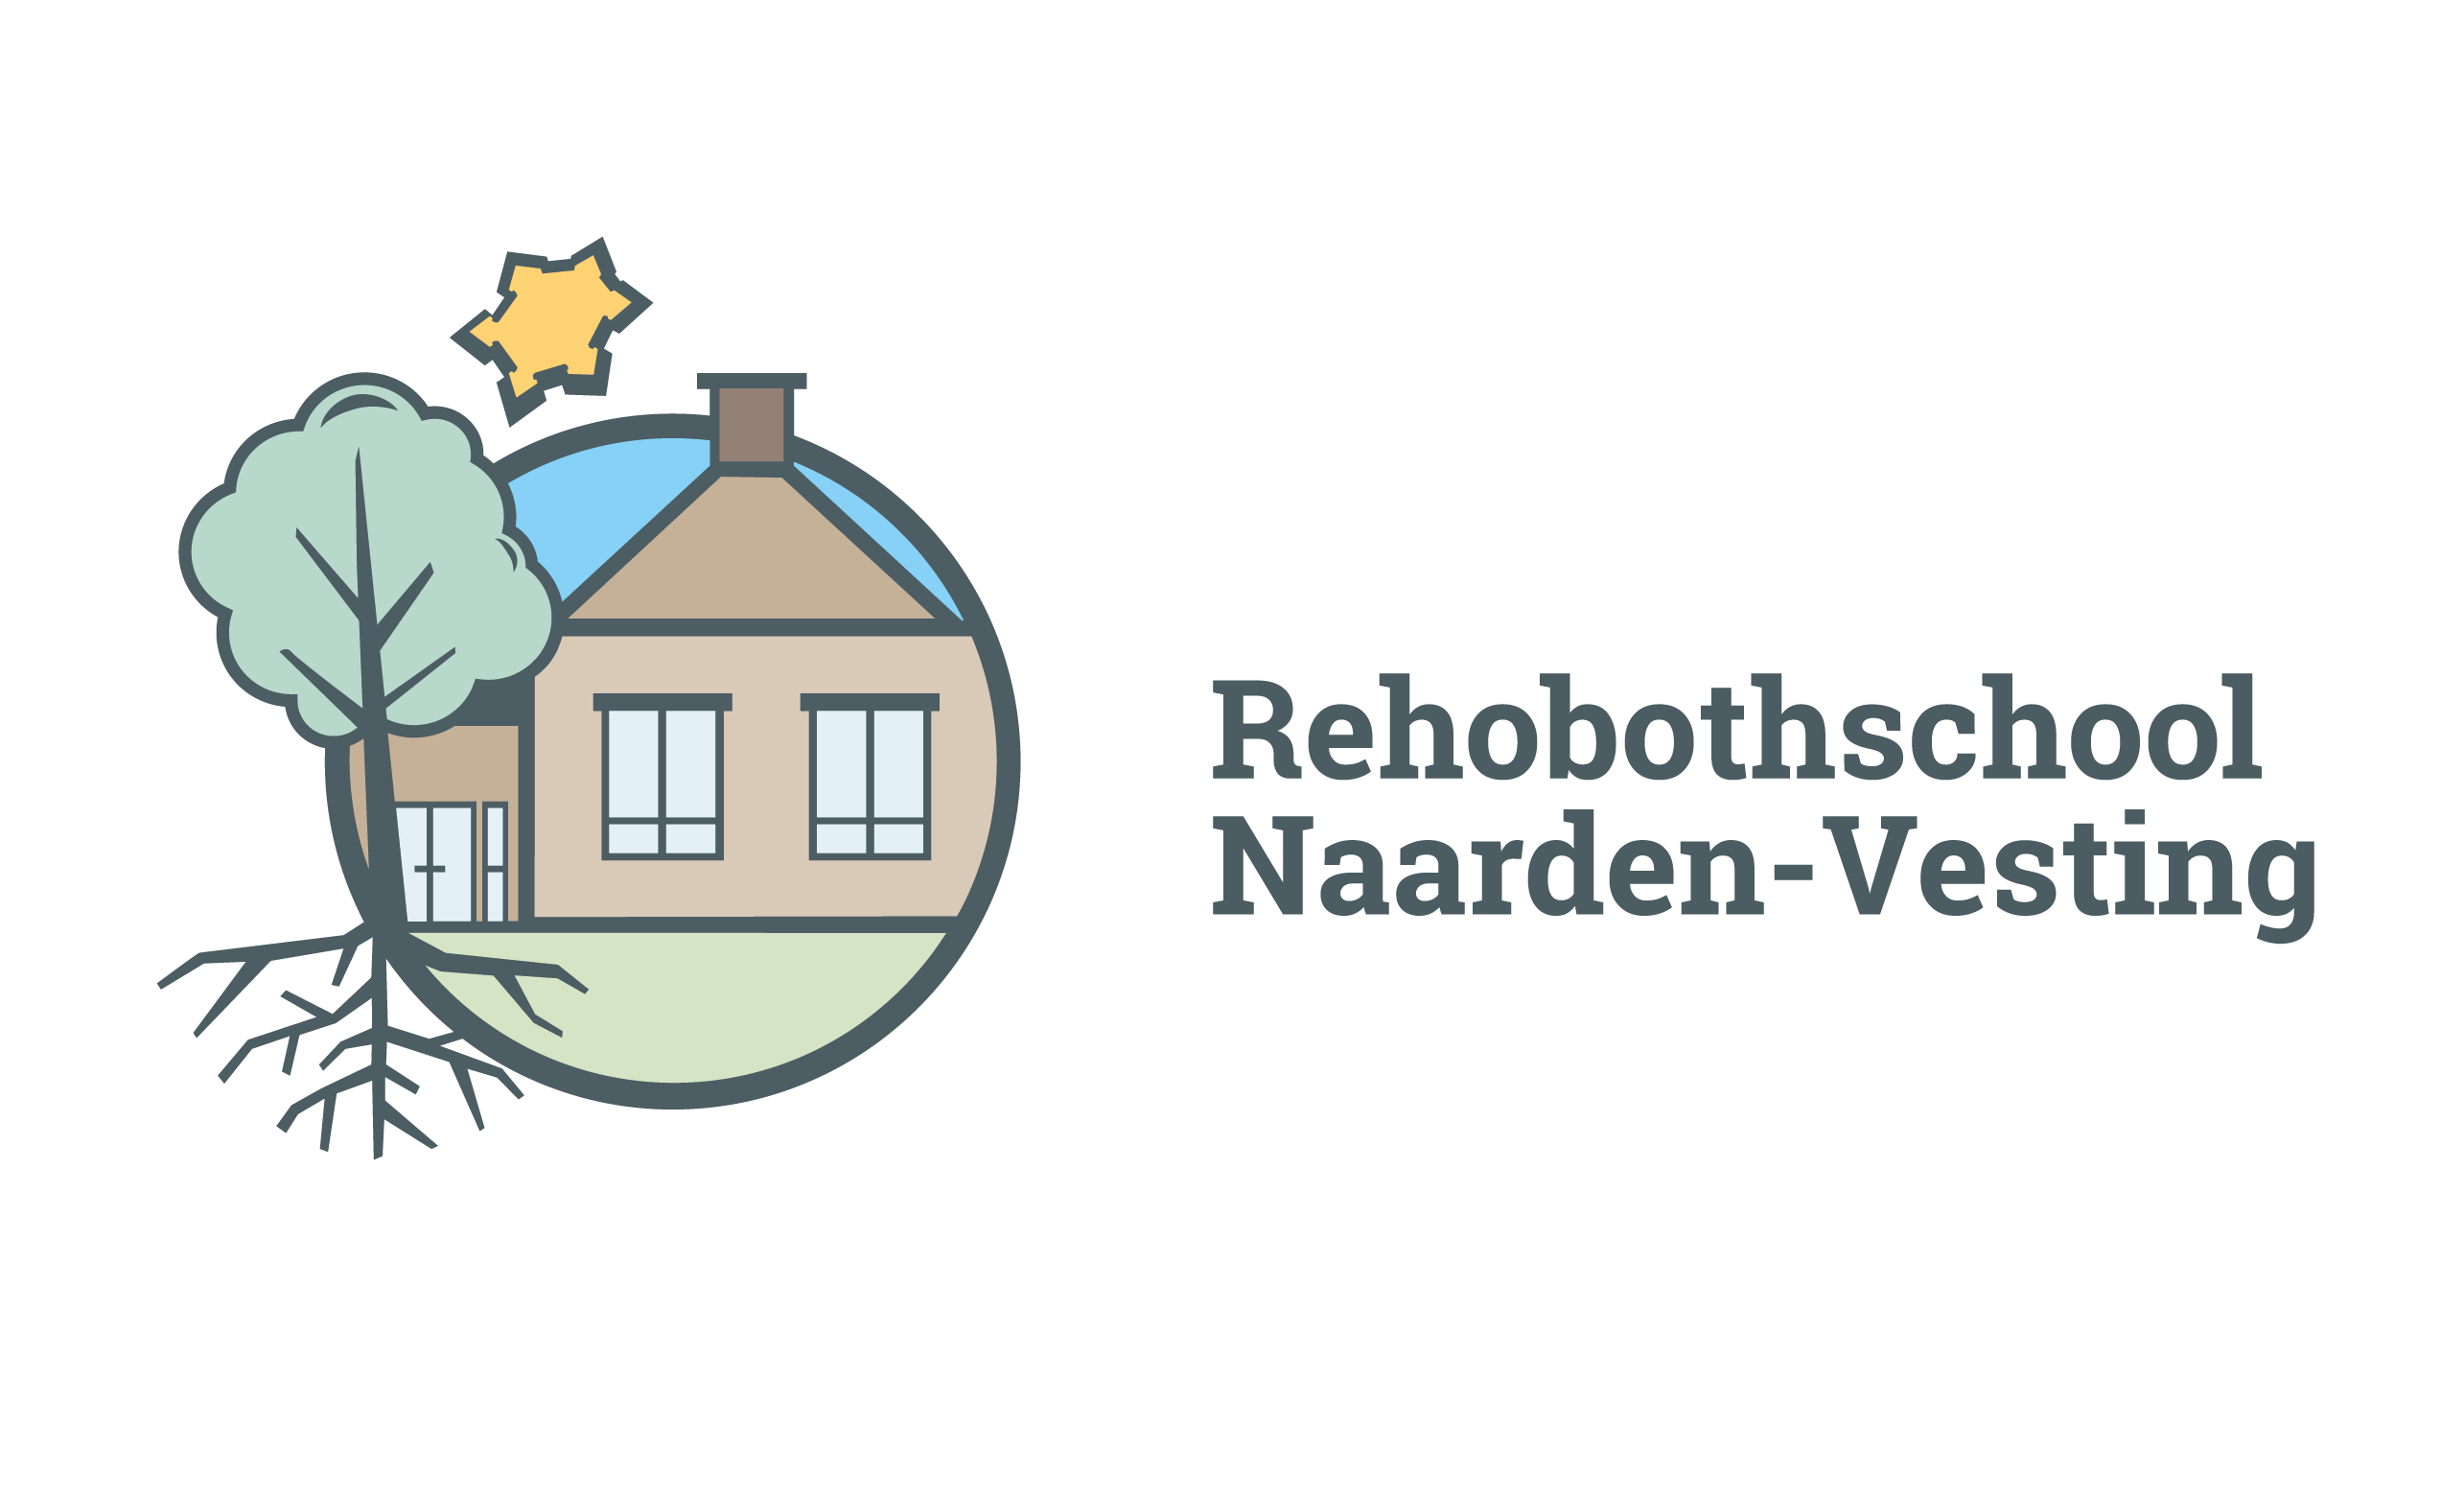 Rehobothschool Naarden-Vesting